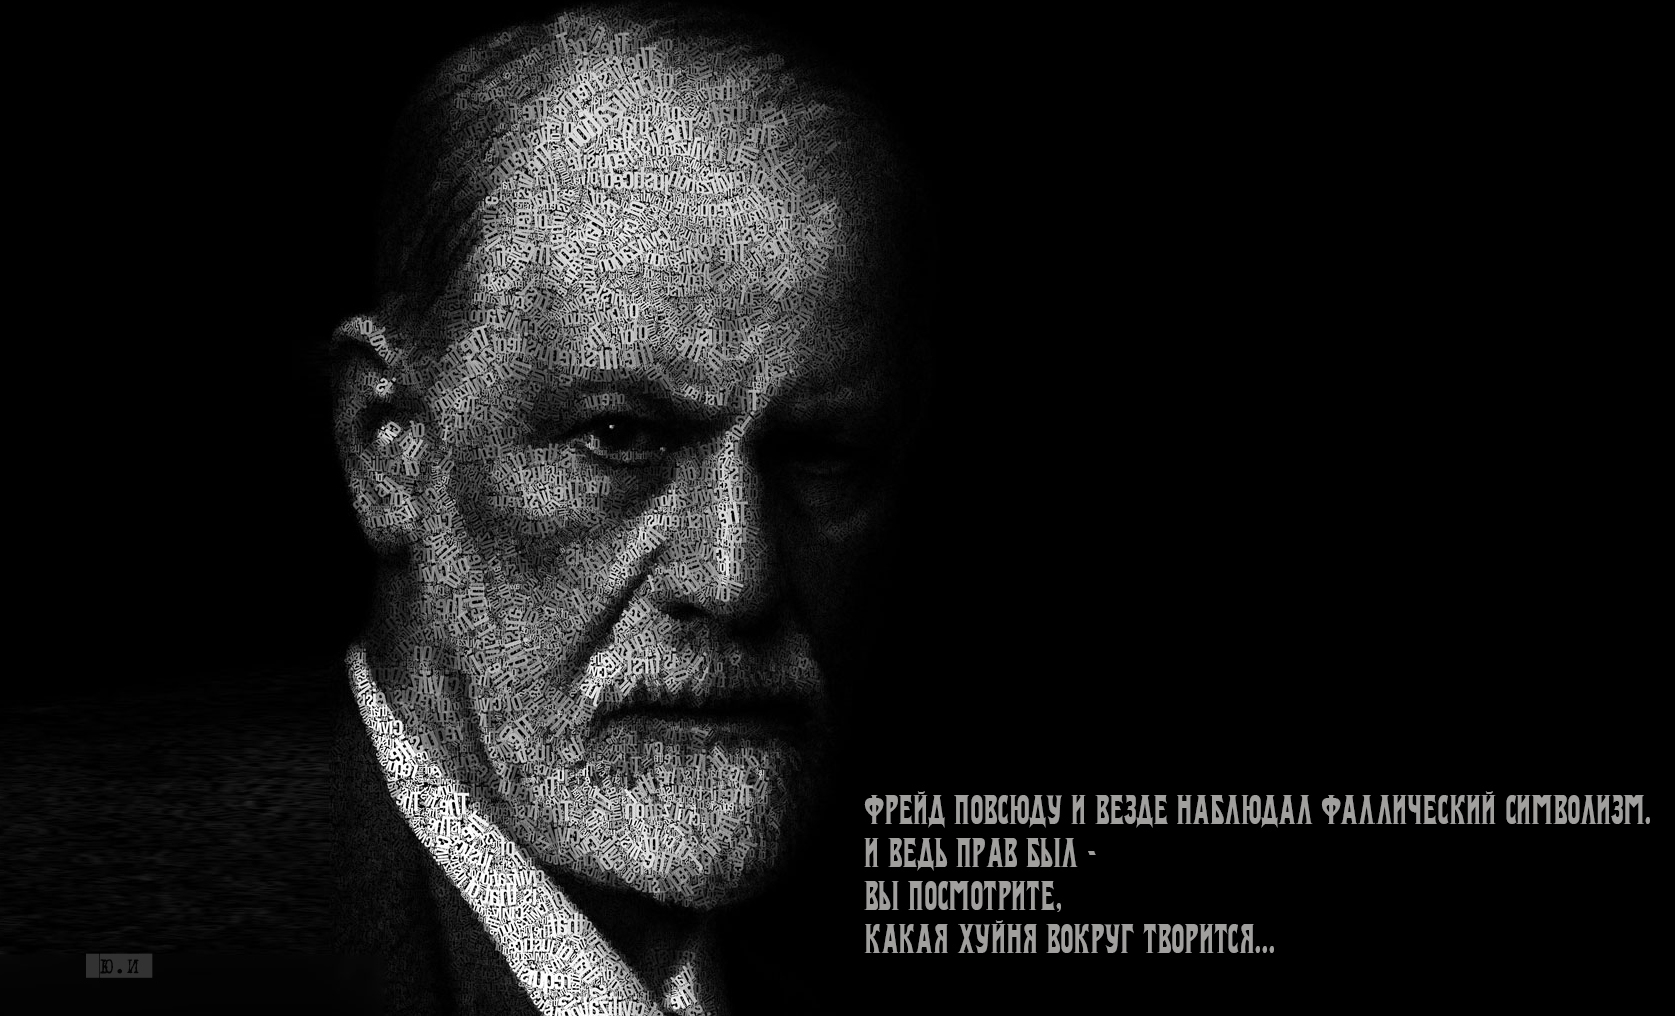 Зигмунд Фрейд | Sigmund Freud